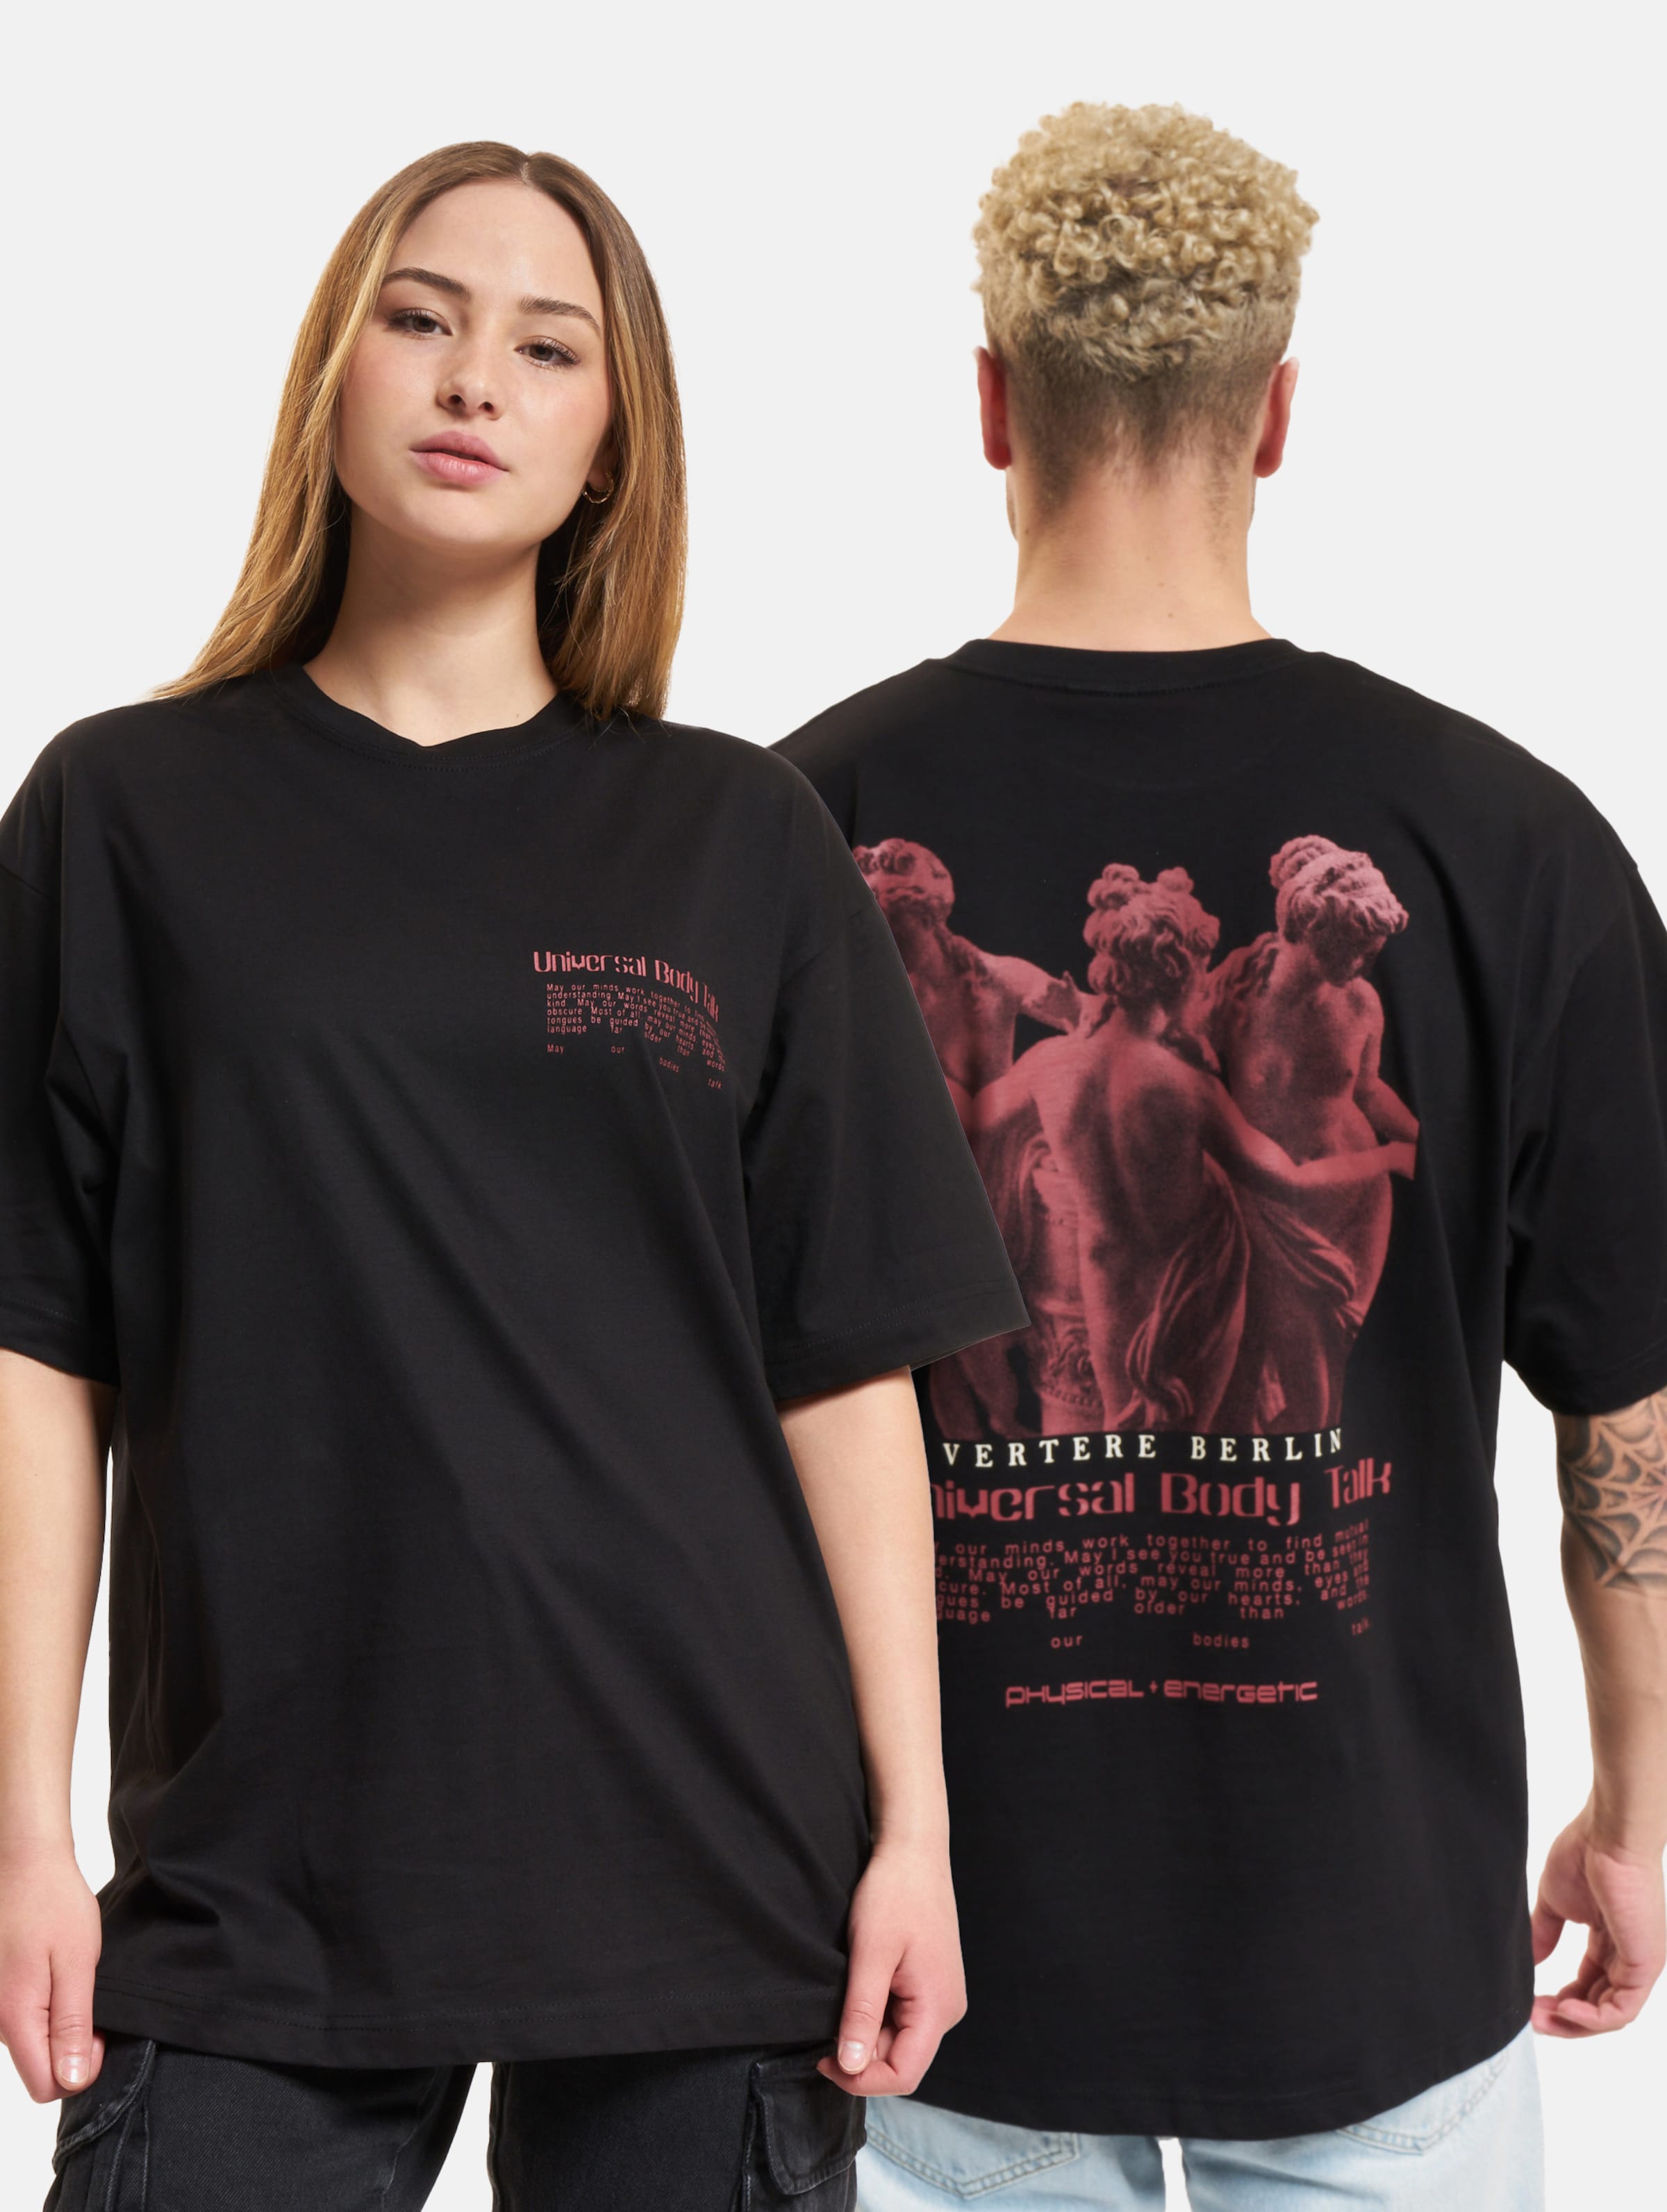 Vertere Berlin Universal Body Talk T-Shirt Frauen,Männer,Unisex op kleur zwart, Maat L